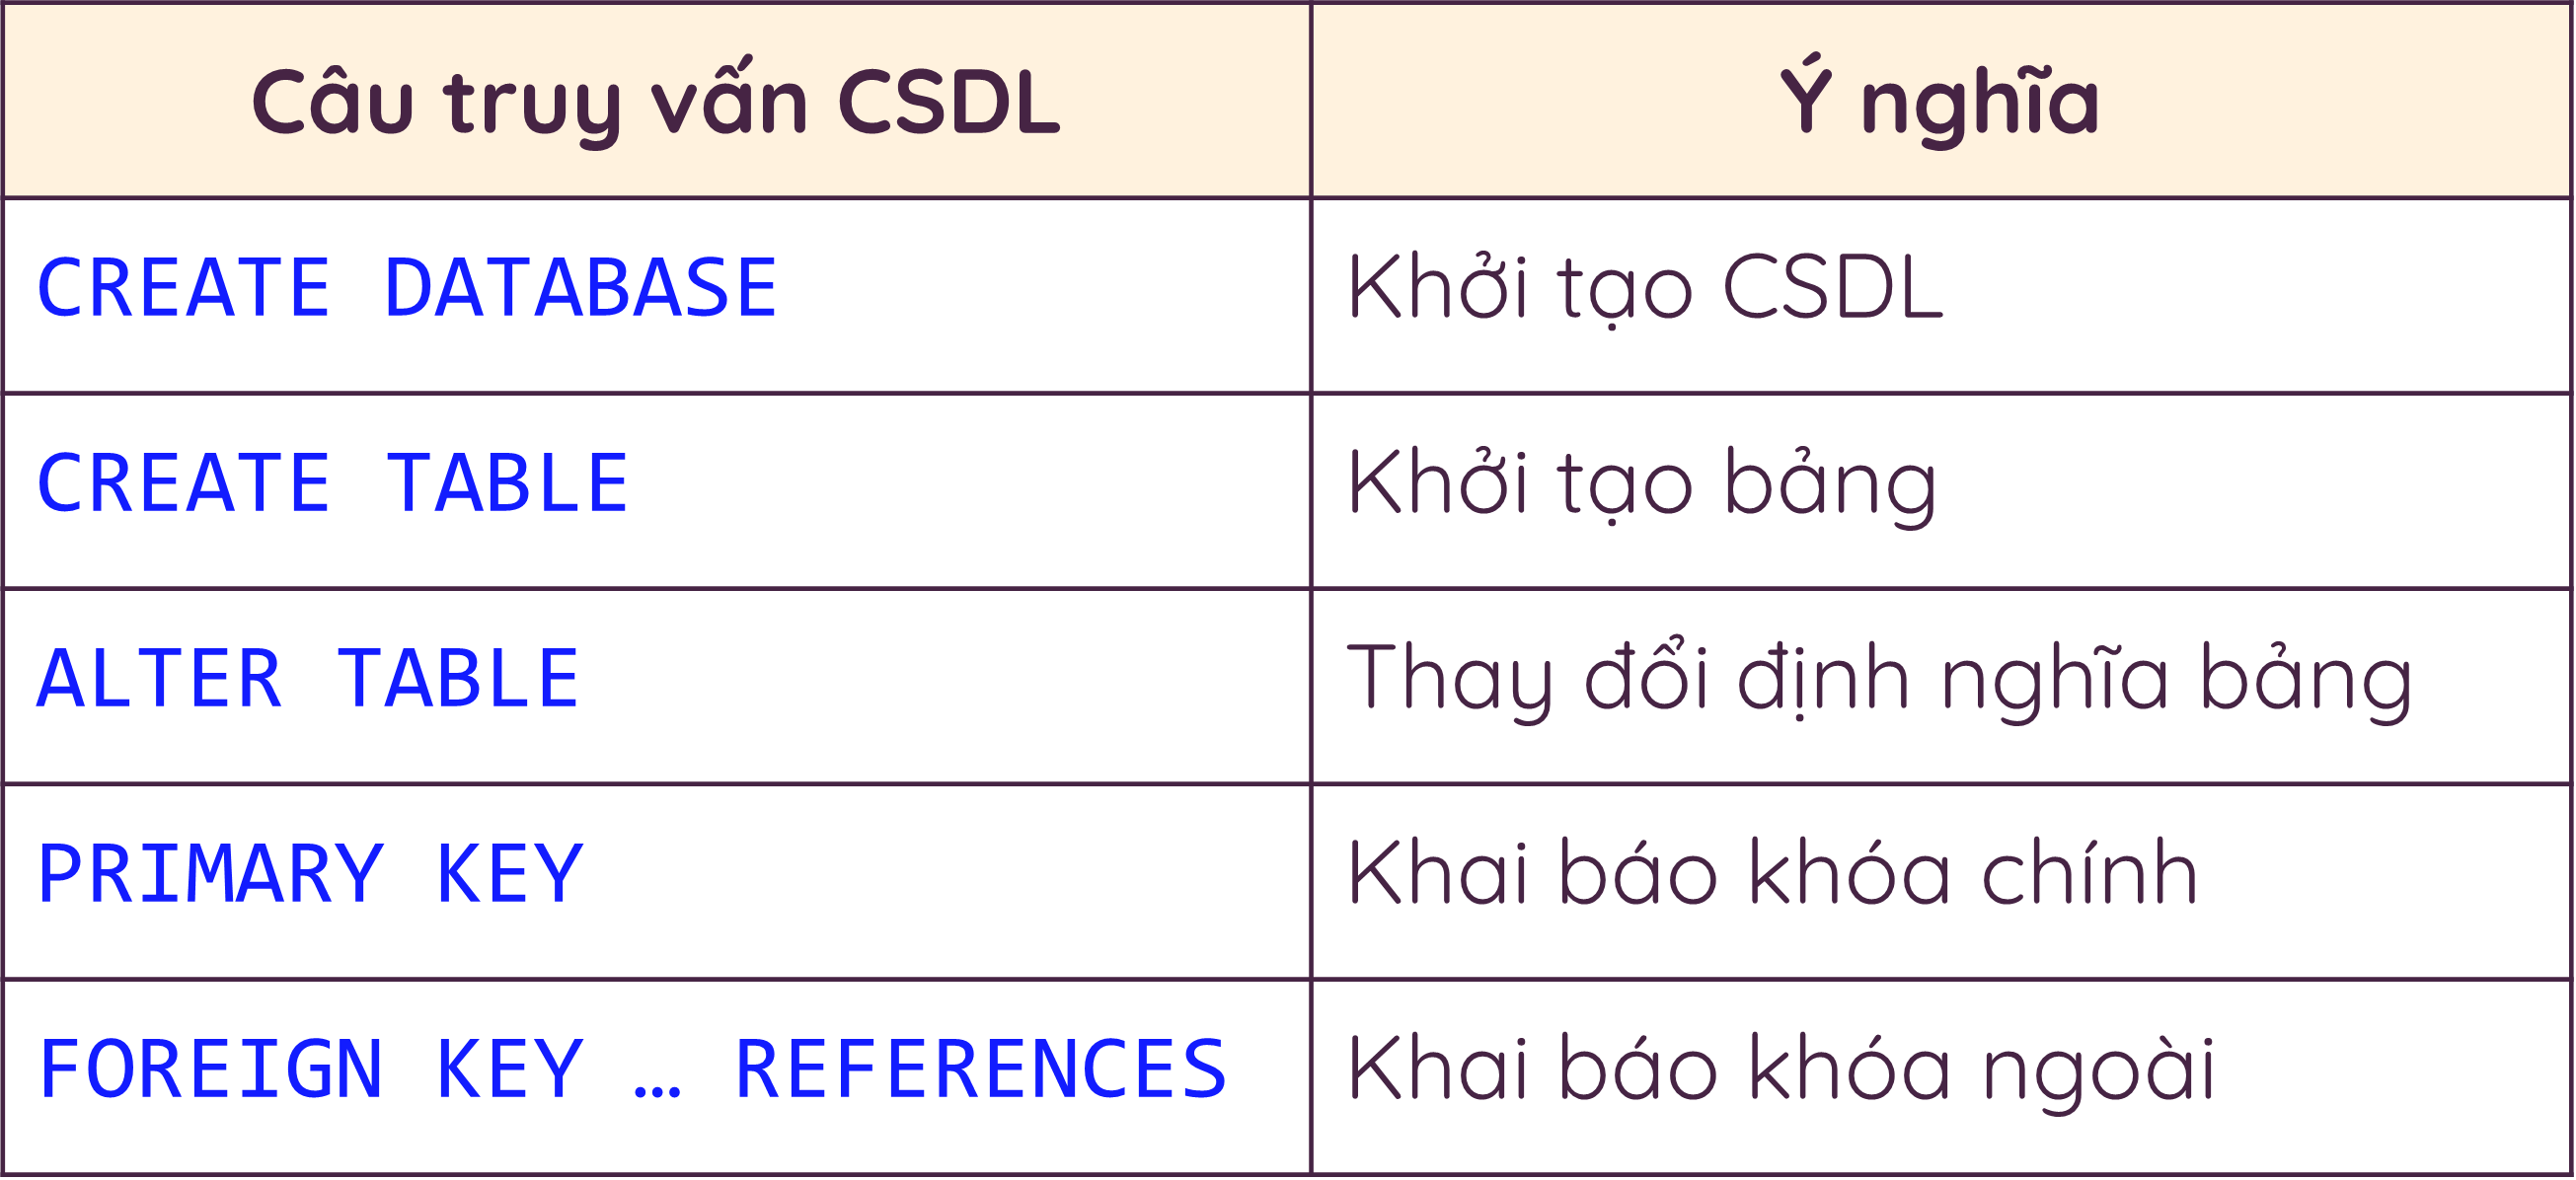 Các câu truy vấn CSDL.